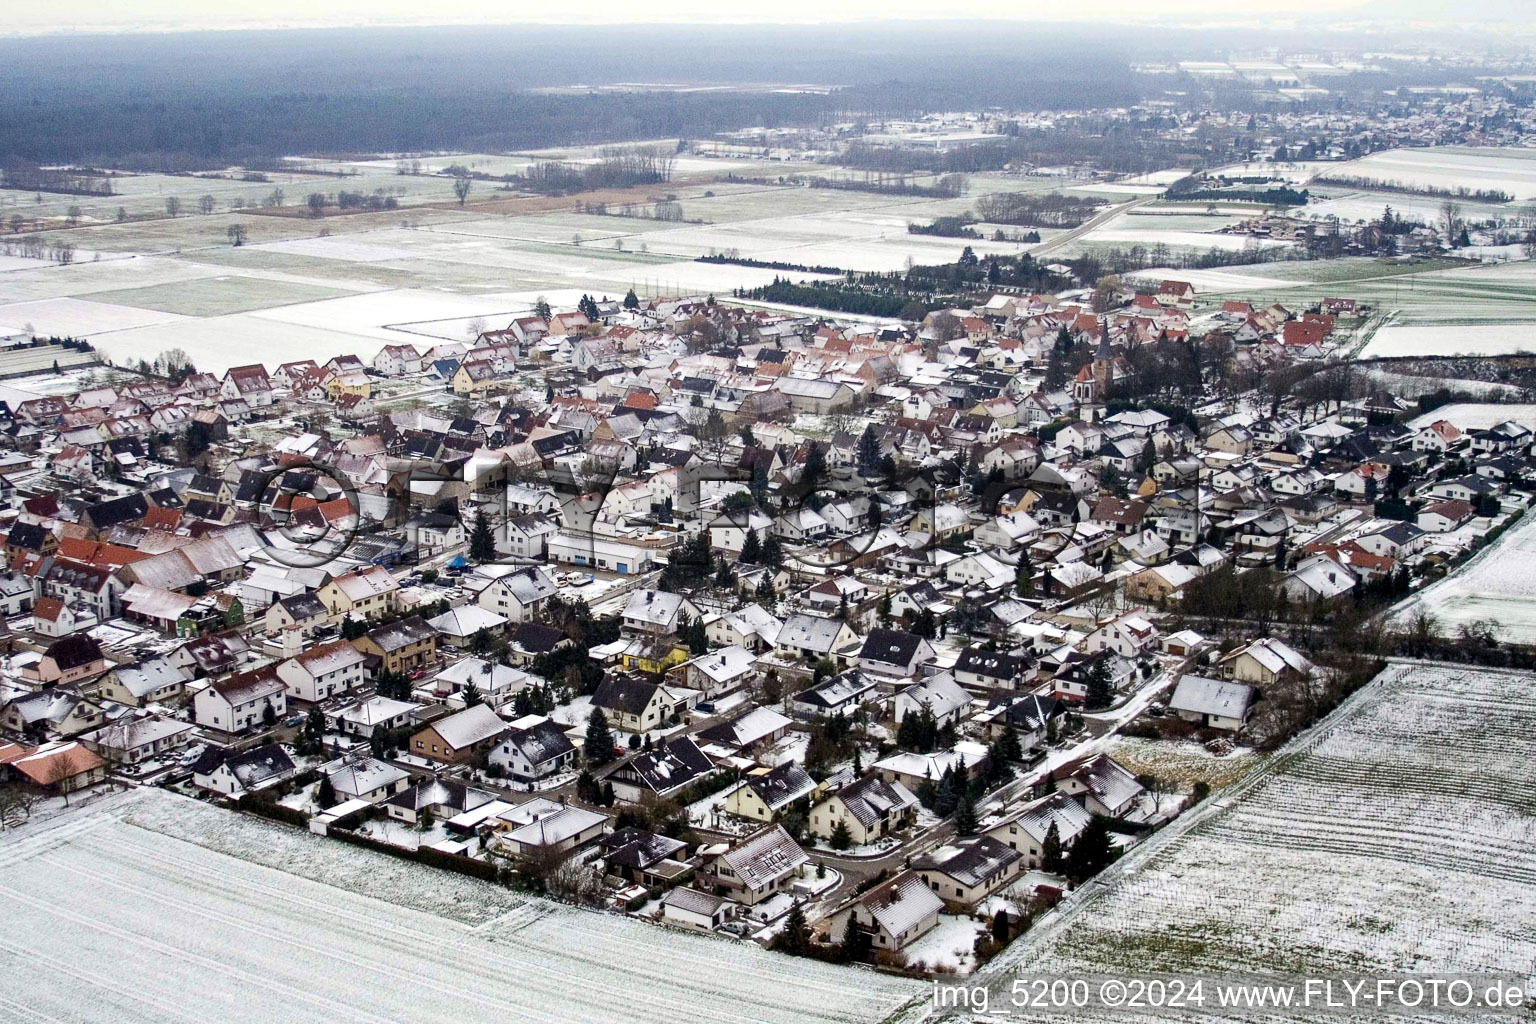 Vue aérienne de Champs agricoles et terres agricoles enneigés en hiver à Freckenfeld dans le département Rhénanie-Palatinat, Allemagne